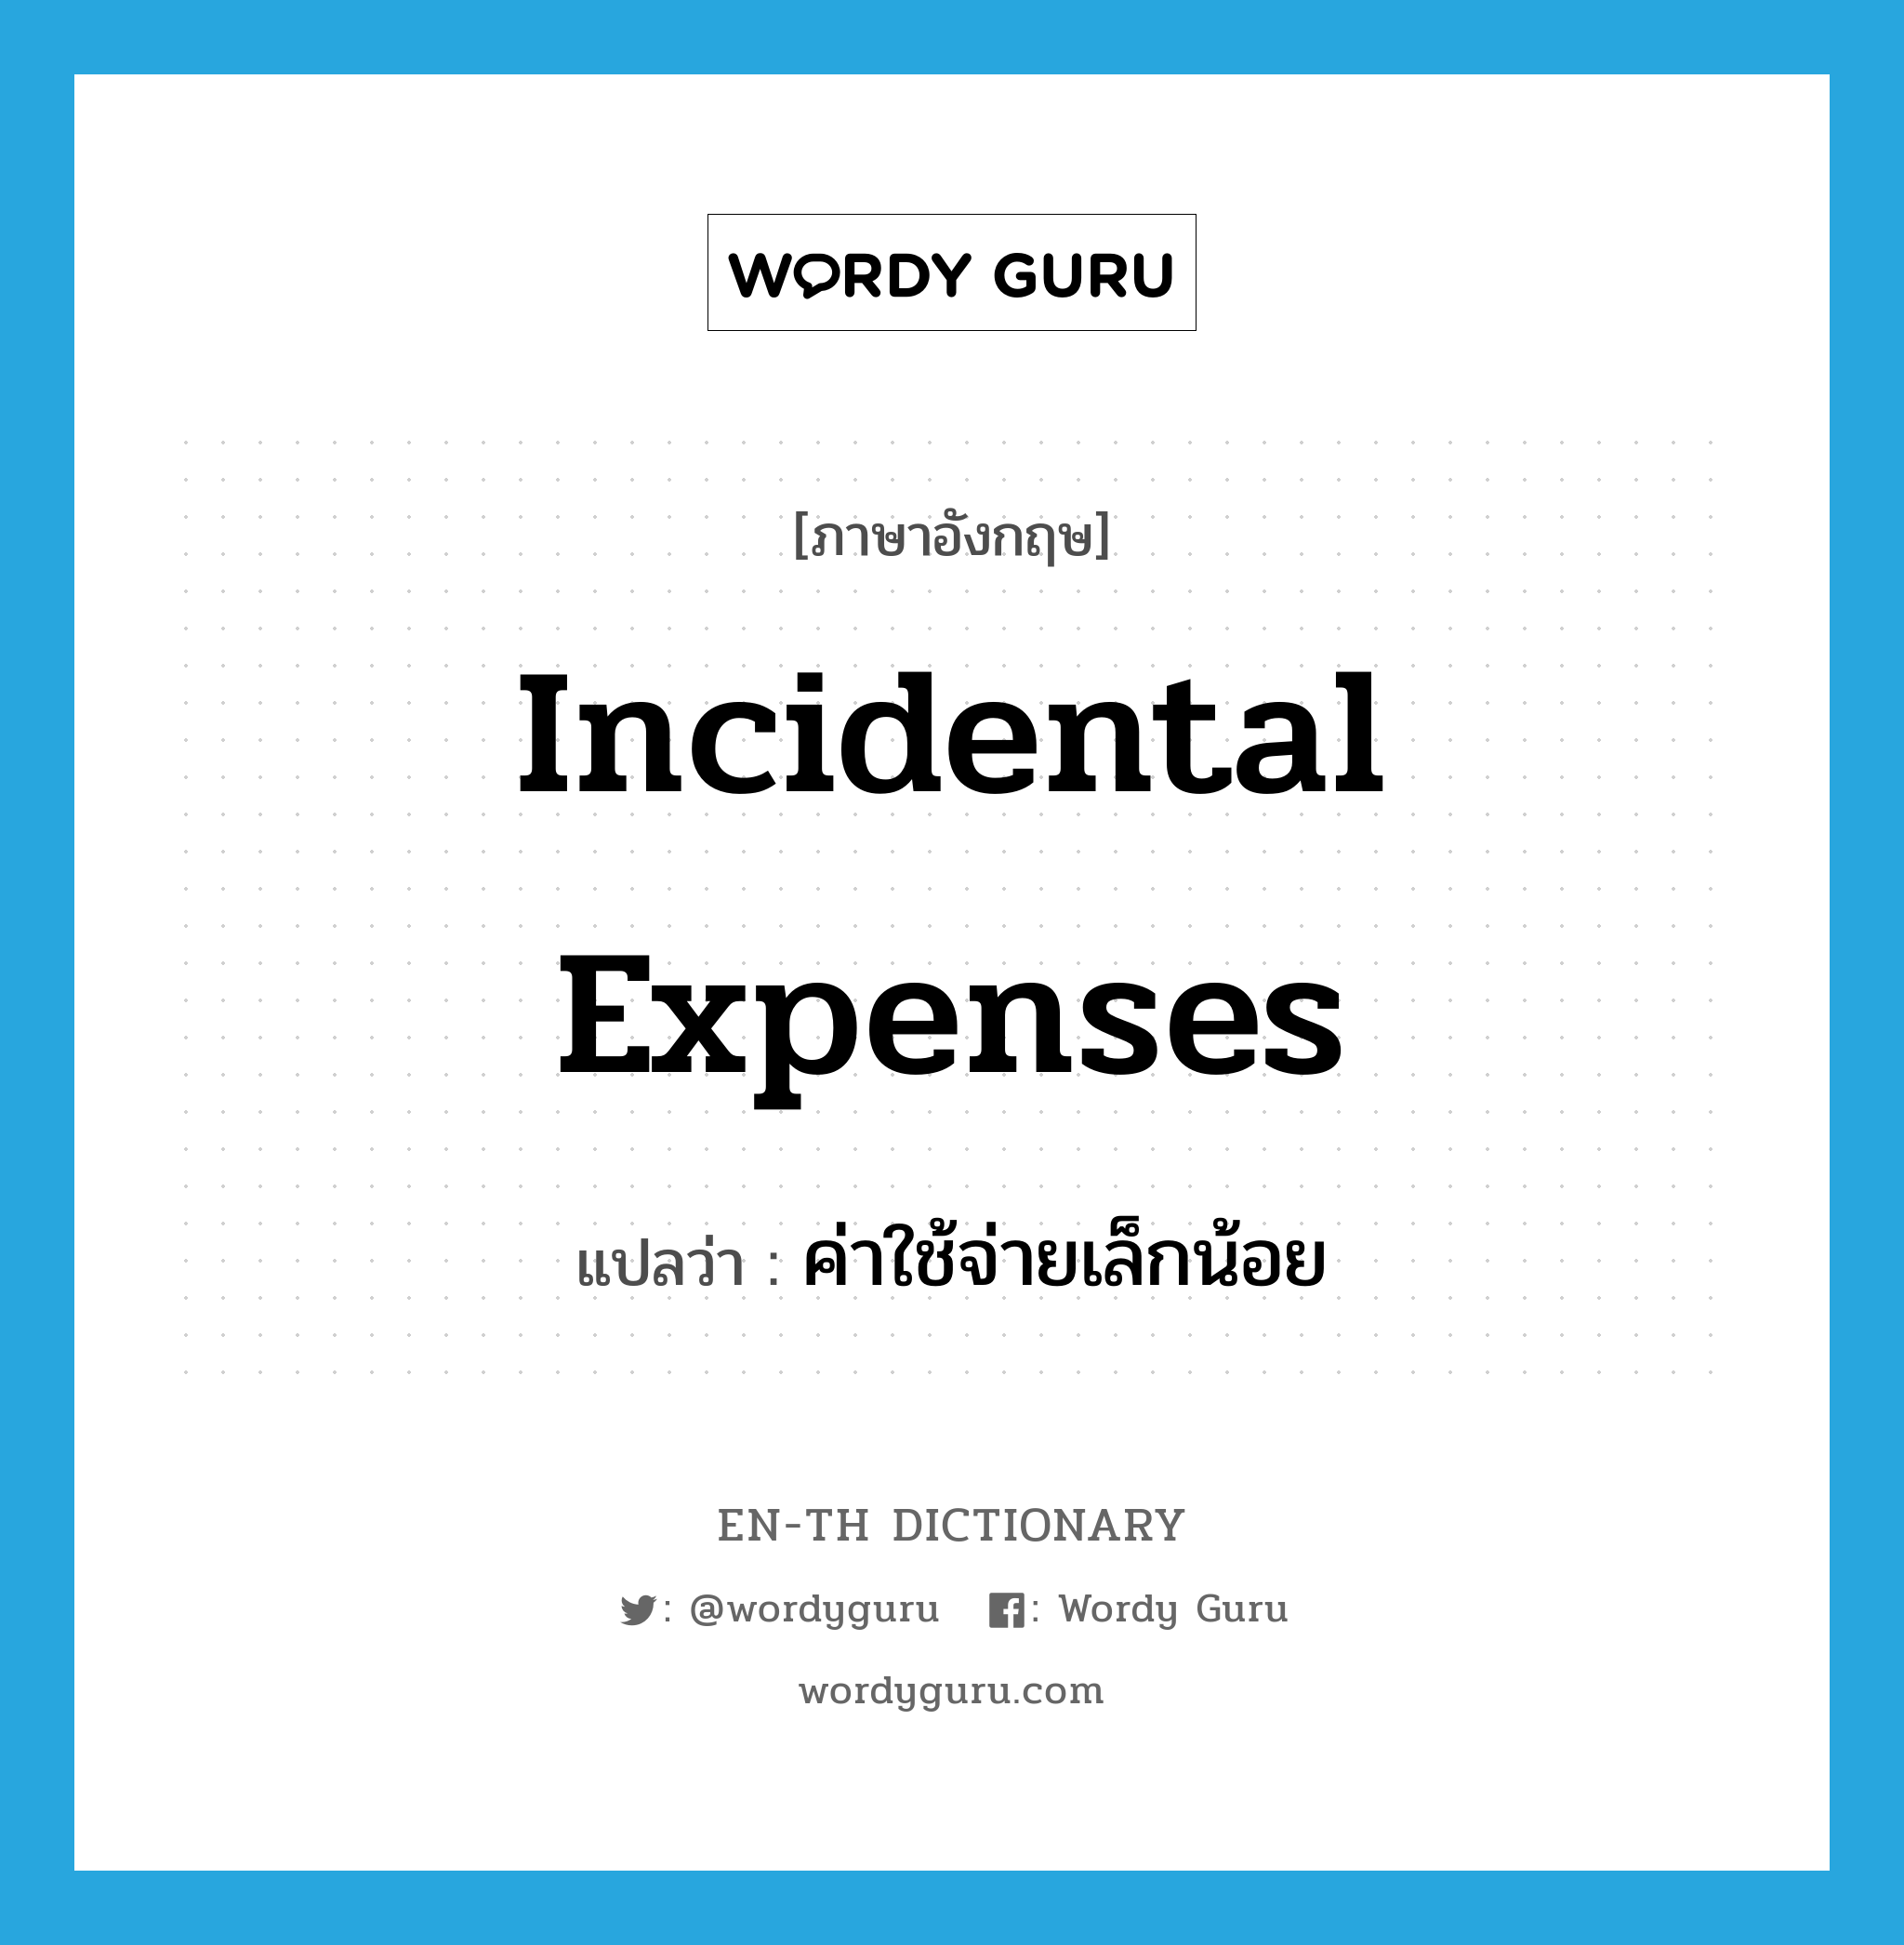 ค่าใช้จ่ายเล็กน้อย ภาษาอังกฤษ?, คำศัพท์ภาษาอังกฤษ ค่าใช้จ่ายเล็กน้อย แปลว่า incidental expenses ประเภท N หมวด N